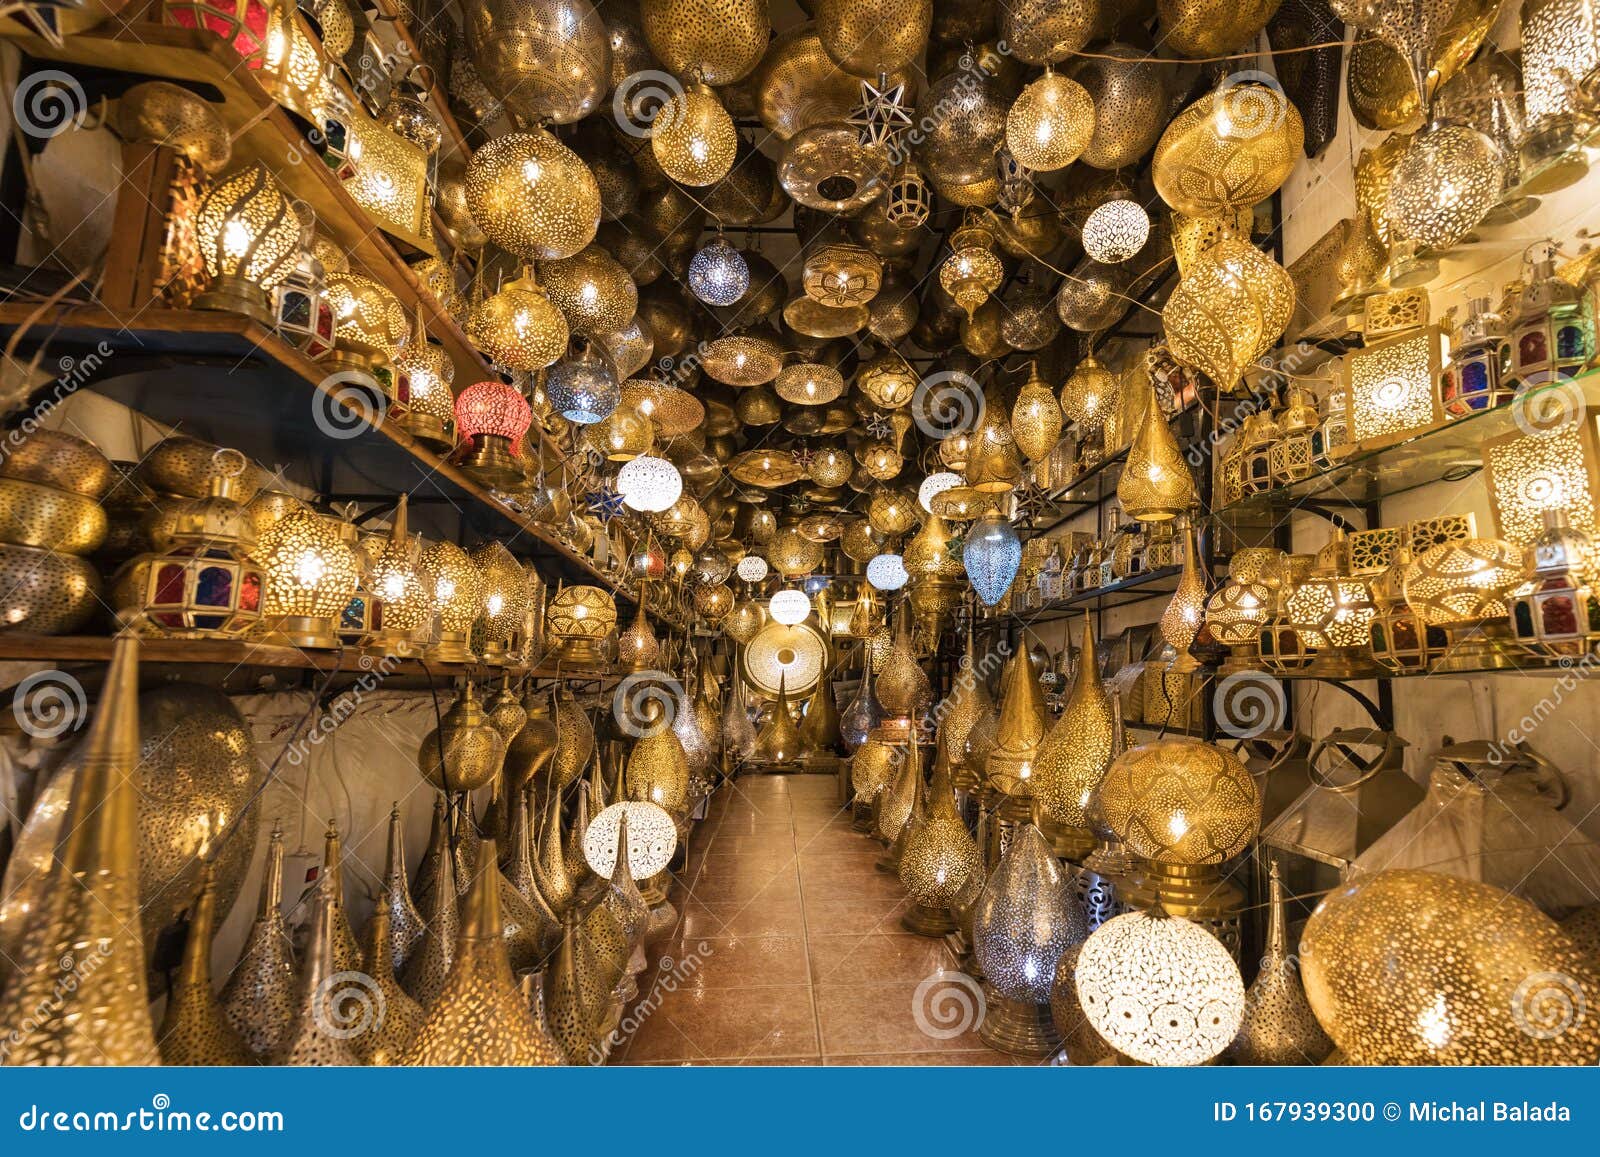 Ophanglampen Van Marokkaanse Stijl Op De Markt Medina Lampen En Souvenir-winkels, Marrakech Traditionele Marokkaanse Markt Redactionele Afbeelding - Image of december, goud: 167939300